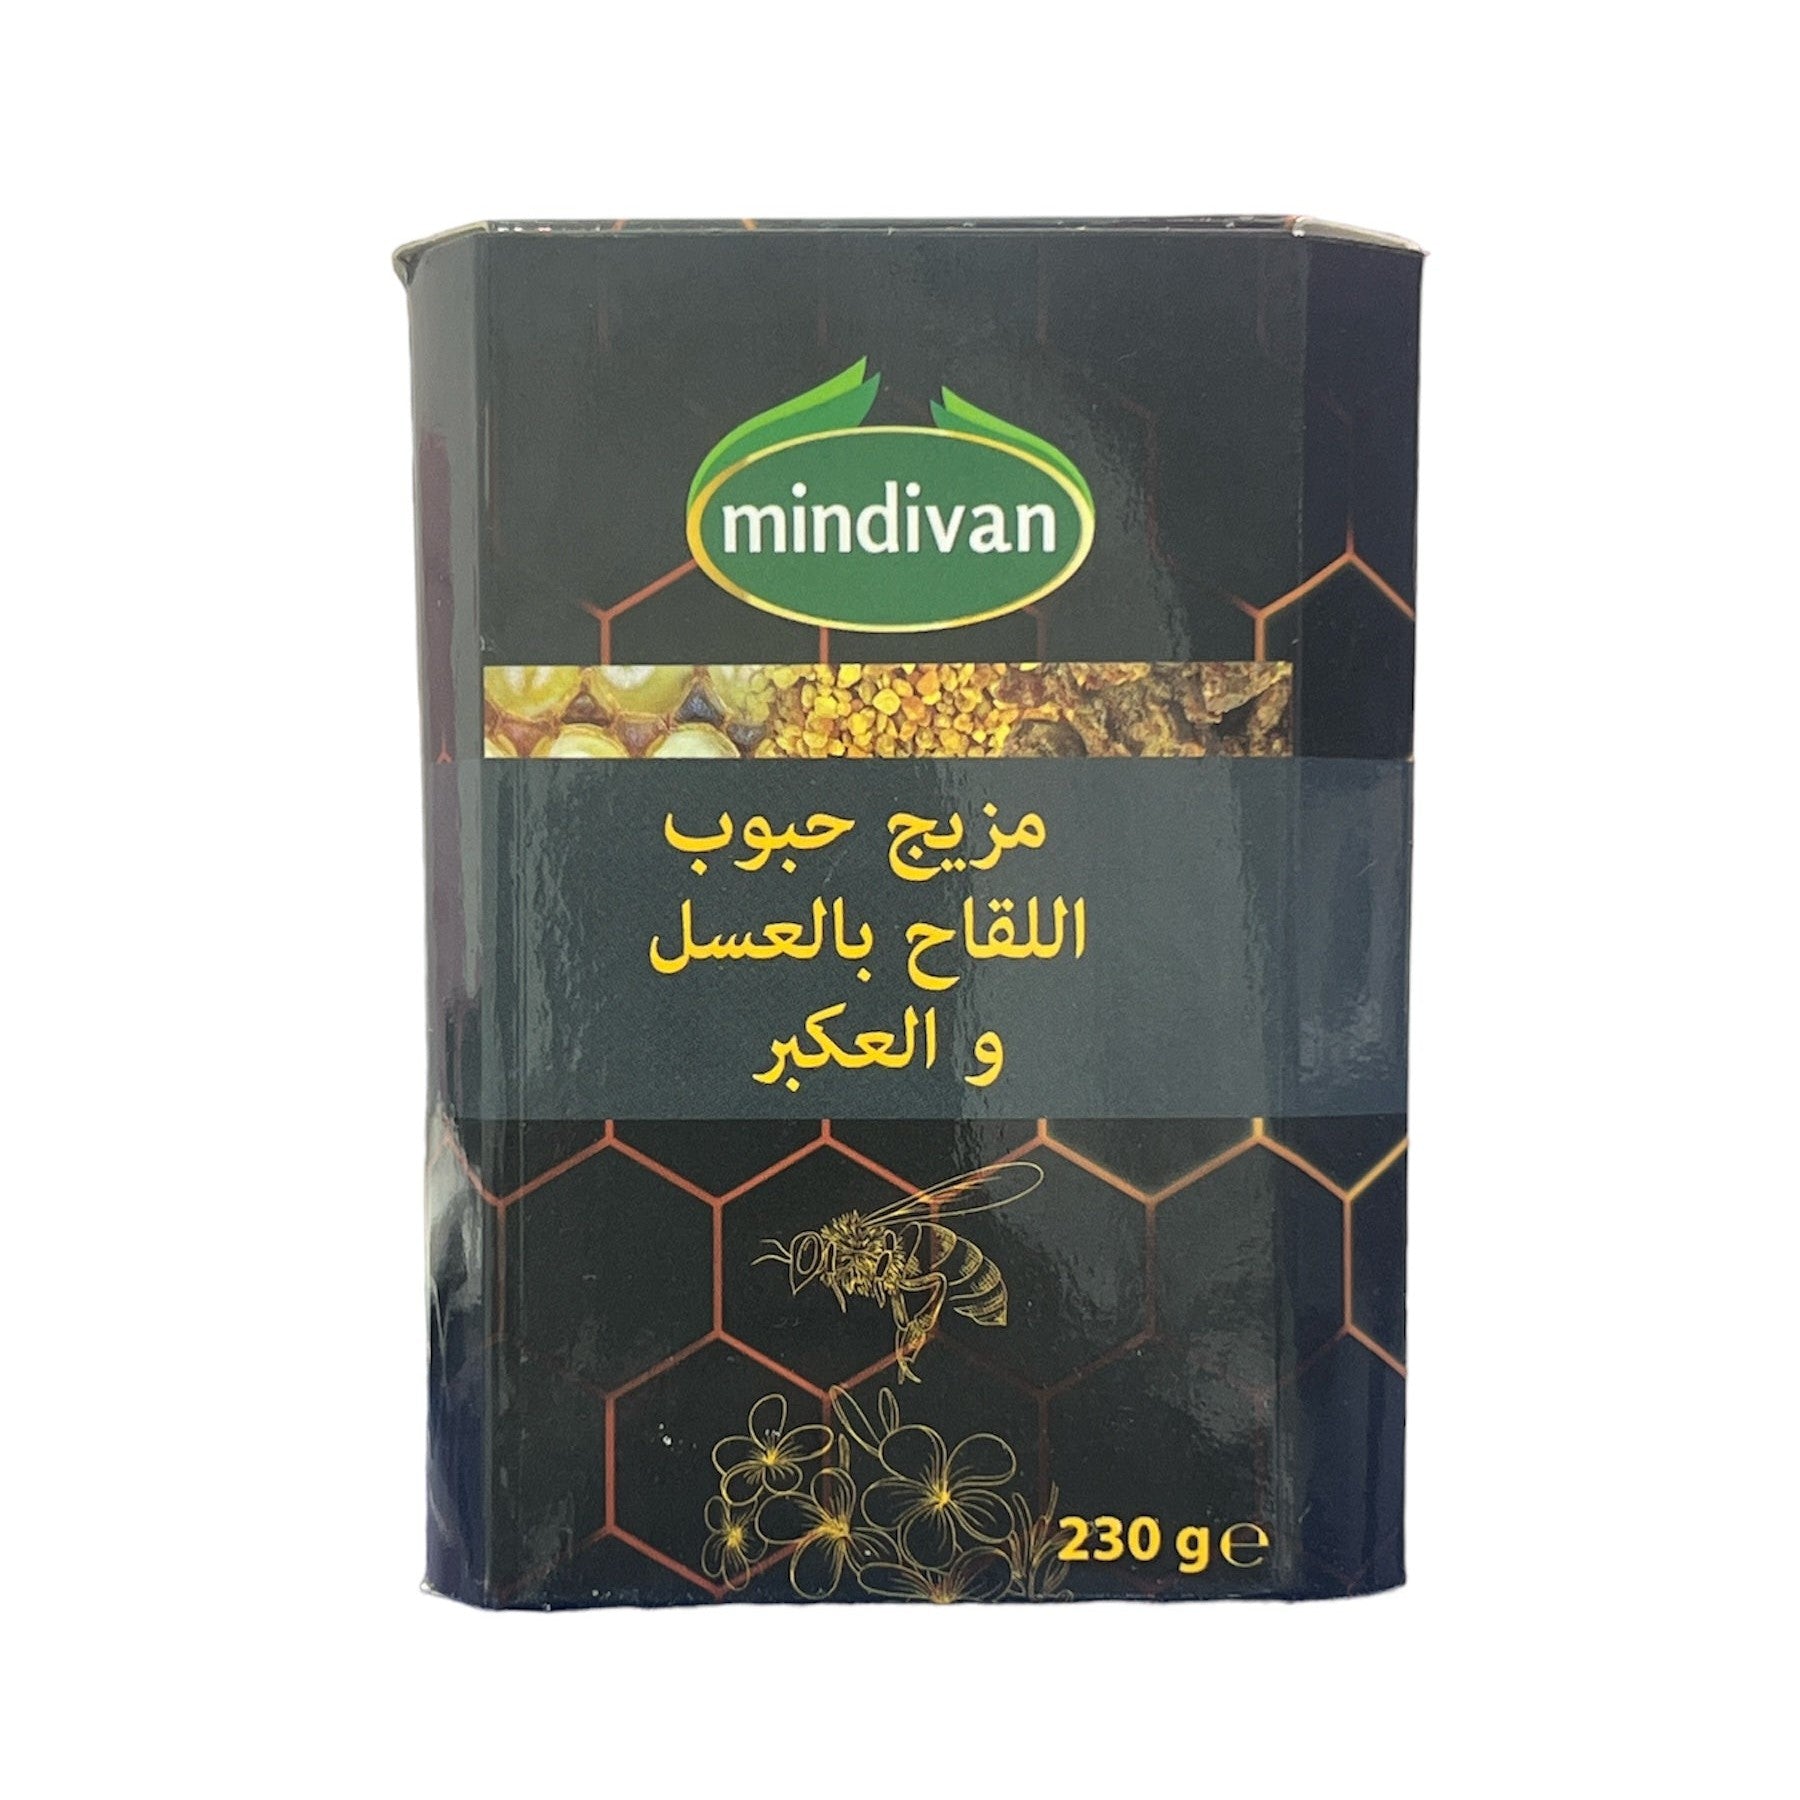 Mindivan Propolis Royal Jelly Honey 230g